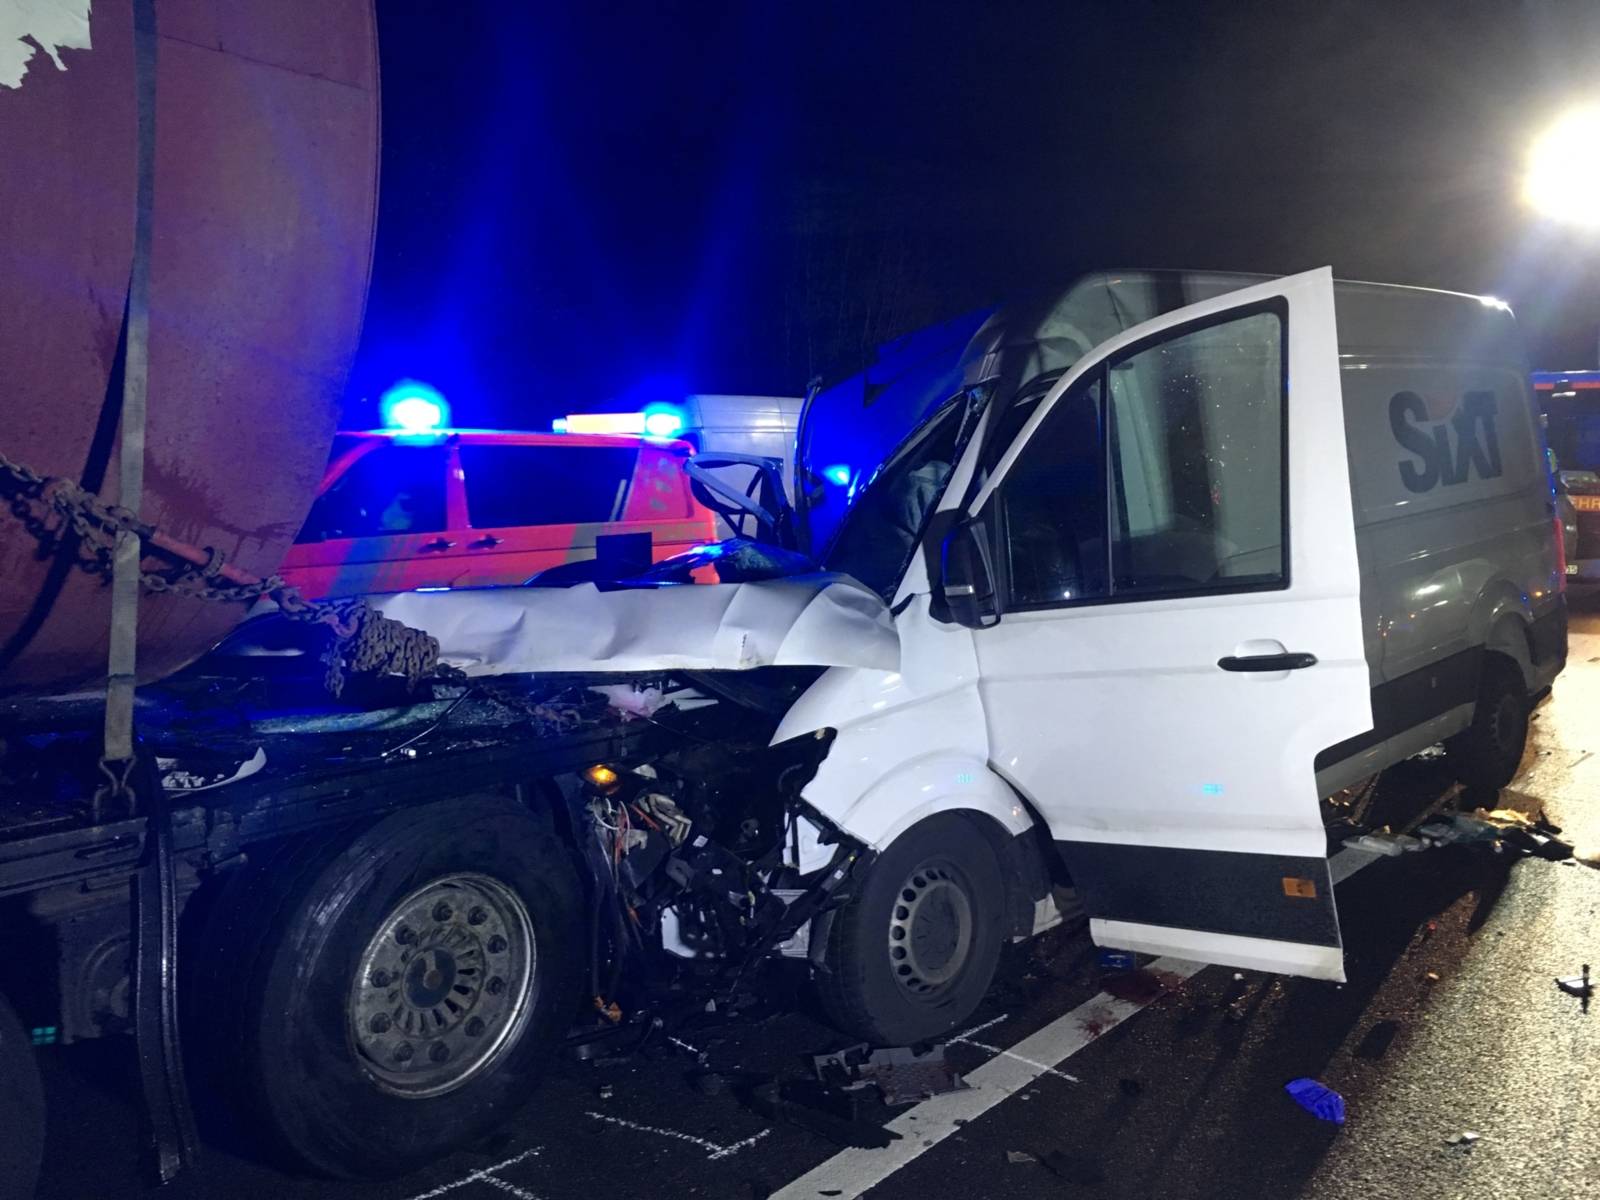 Gegen 23:10 Uhr fuhr ein VW Crafter aus ungeklärter Ursache auf einen LKW auf. Beim Eintreffen der ersten Einsatzkräfte war der Fahrer des VW-Crafter bereits aus seinem Fahrzeug befreit.